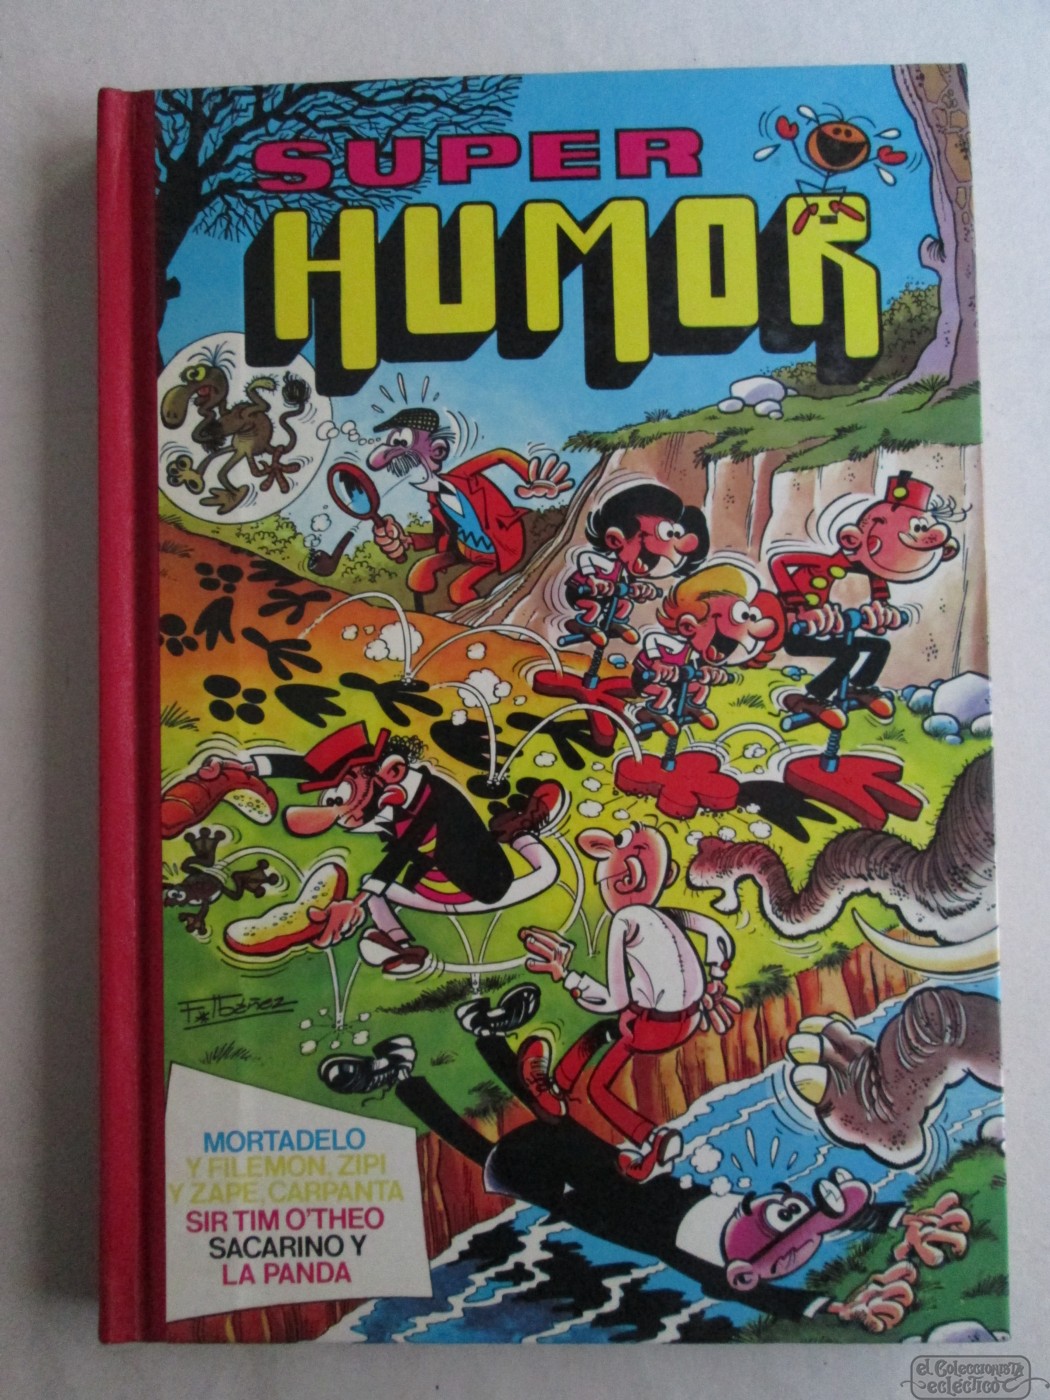 Super Humor, Volume Xxvi, Bruguera, 1985, Francisco Ibáñez, 319 Pages